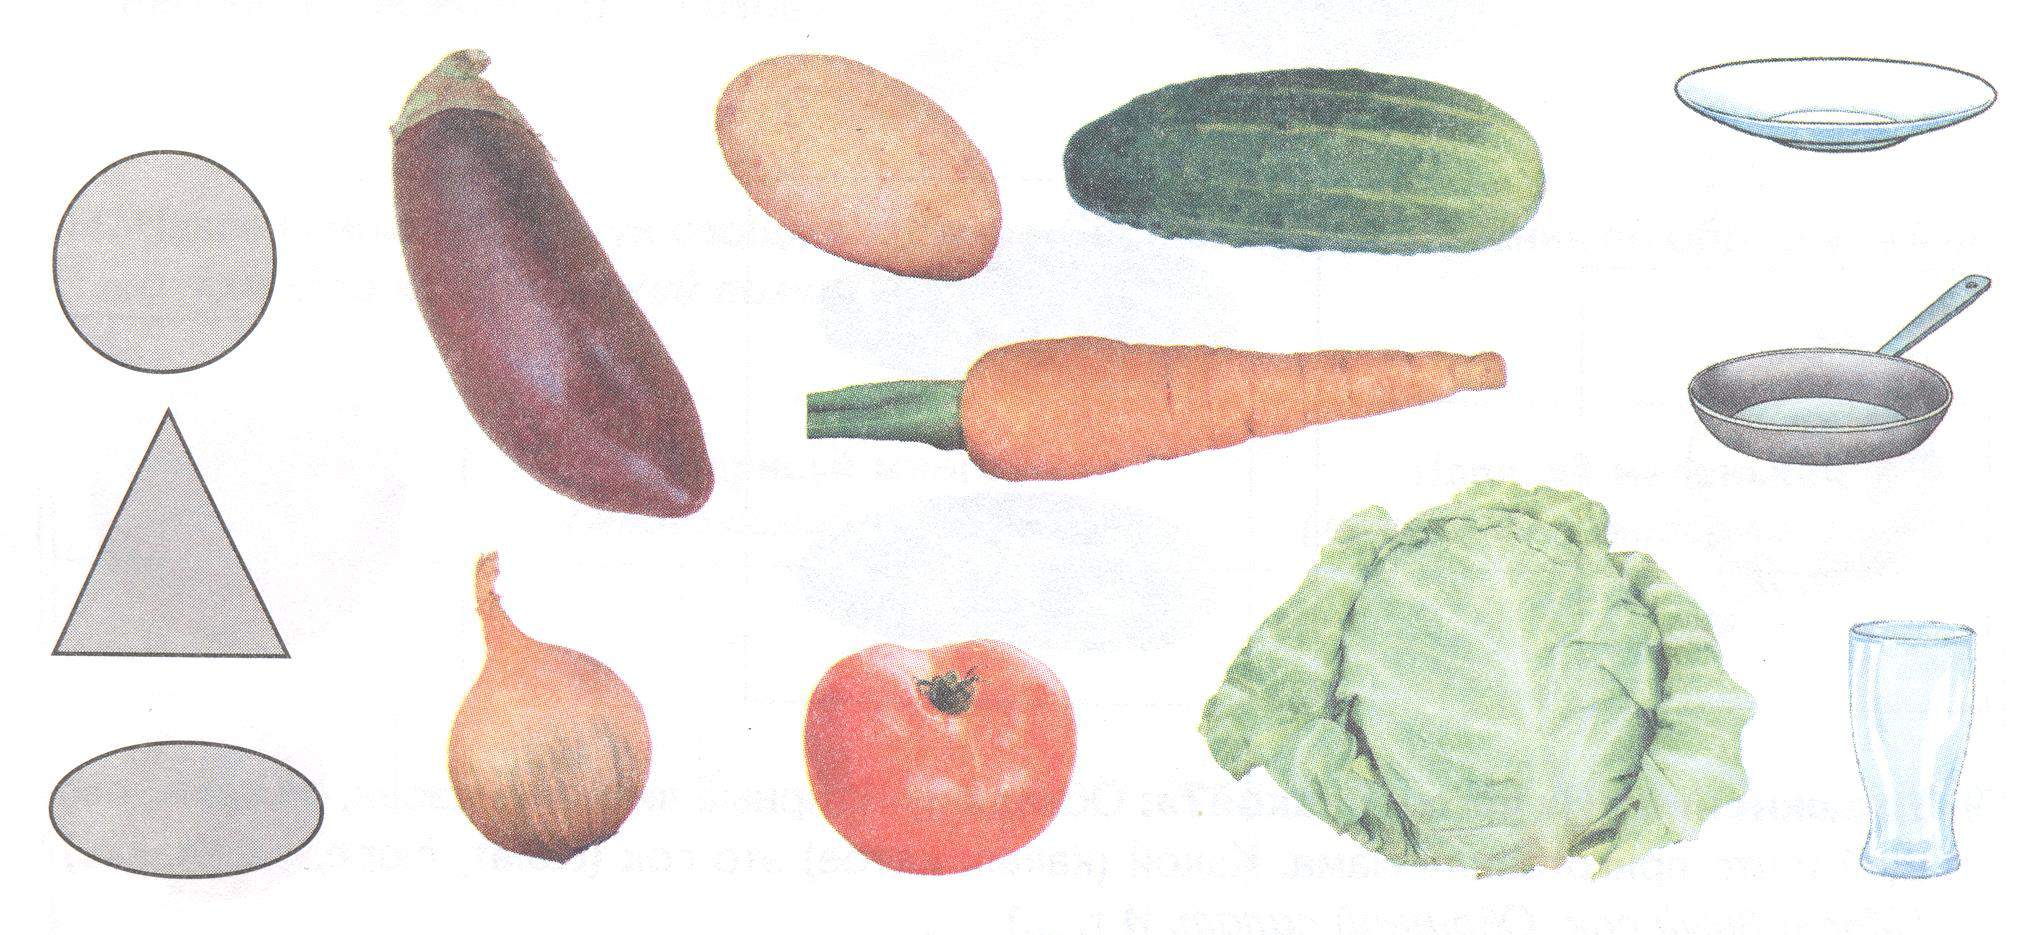 Теремкова логопедические домашние задания для детей овощи